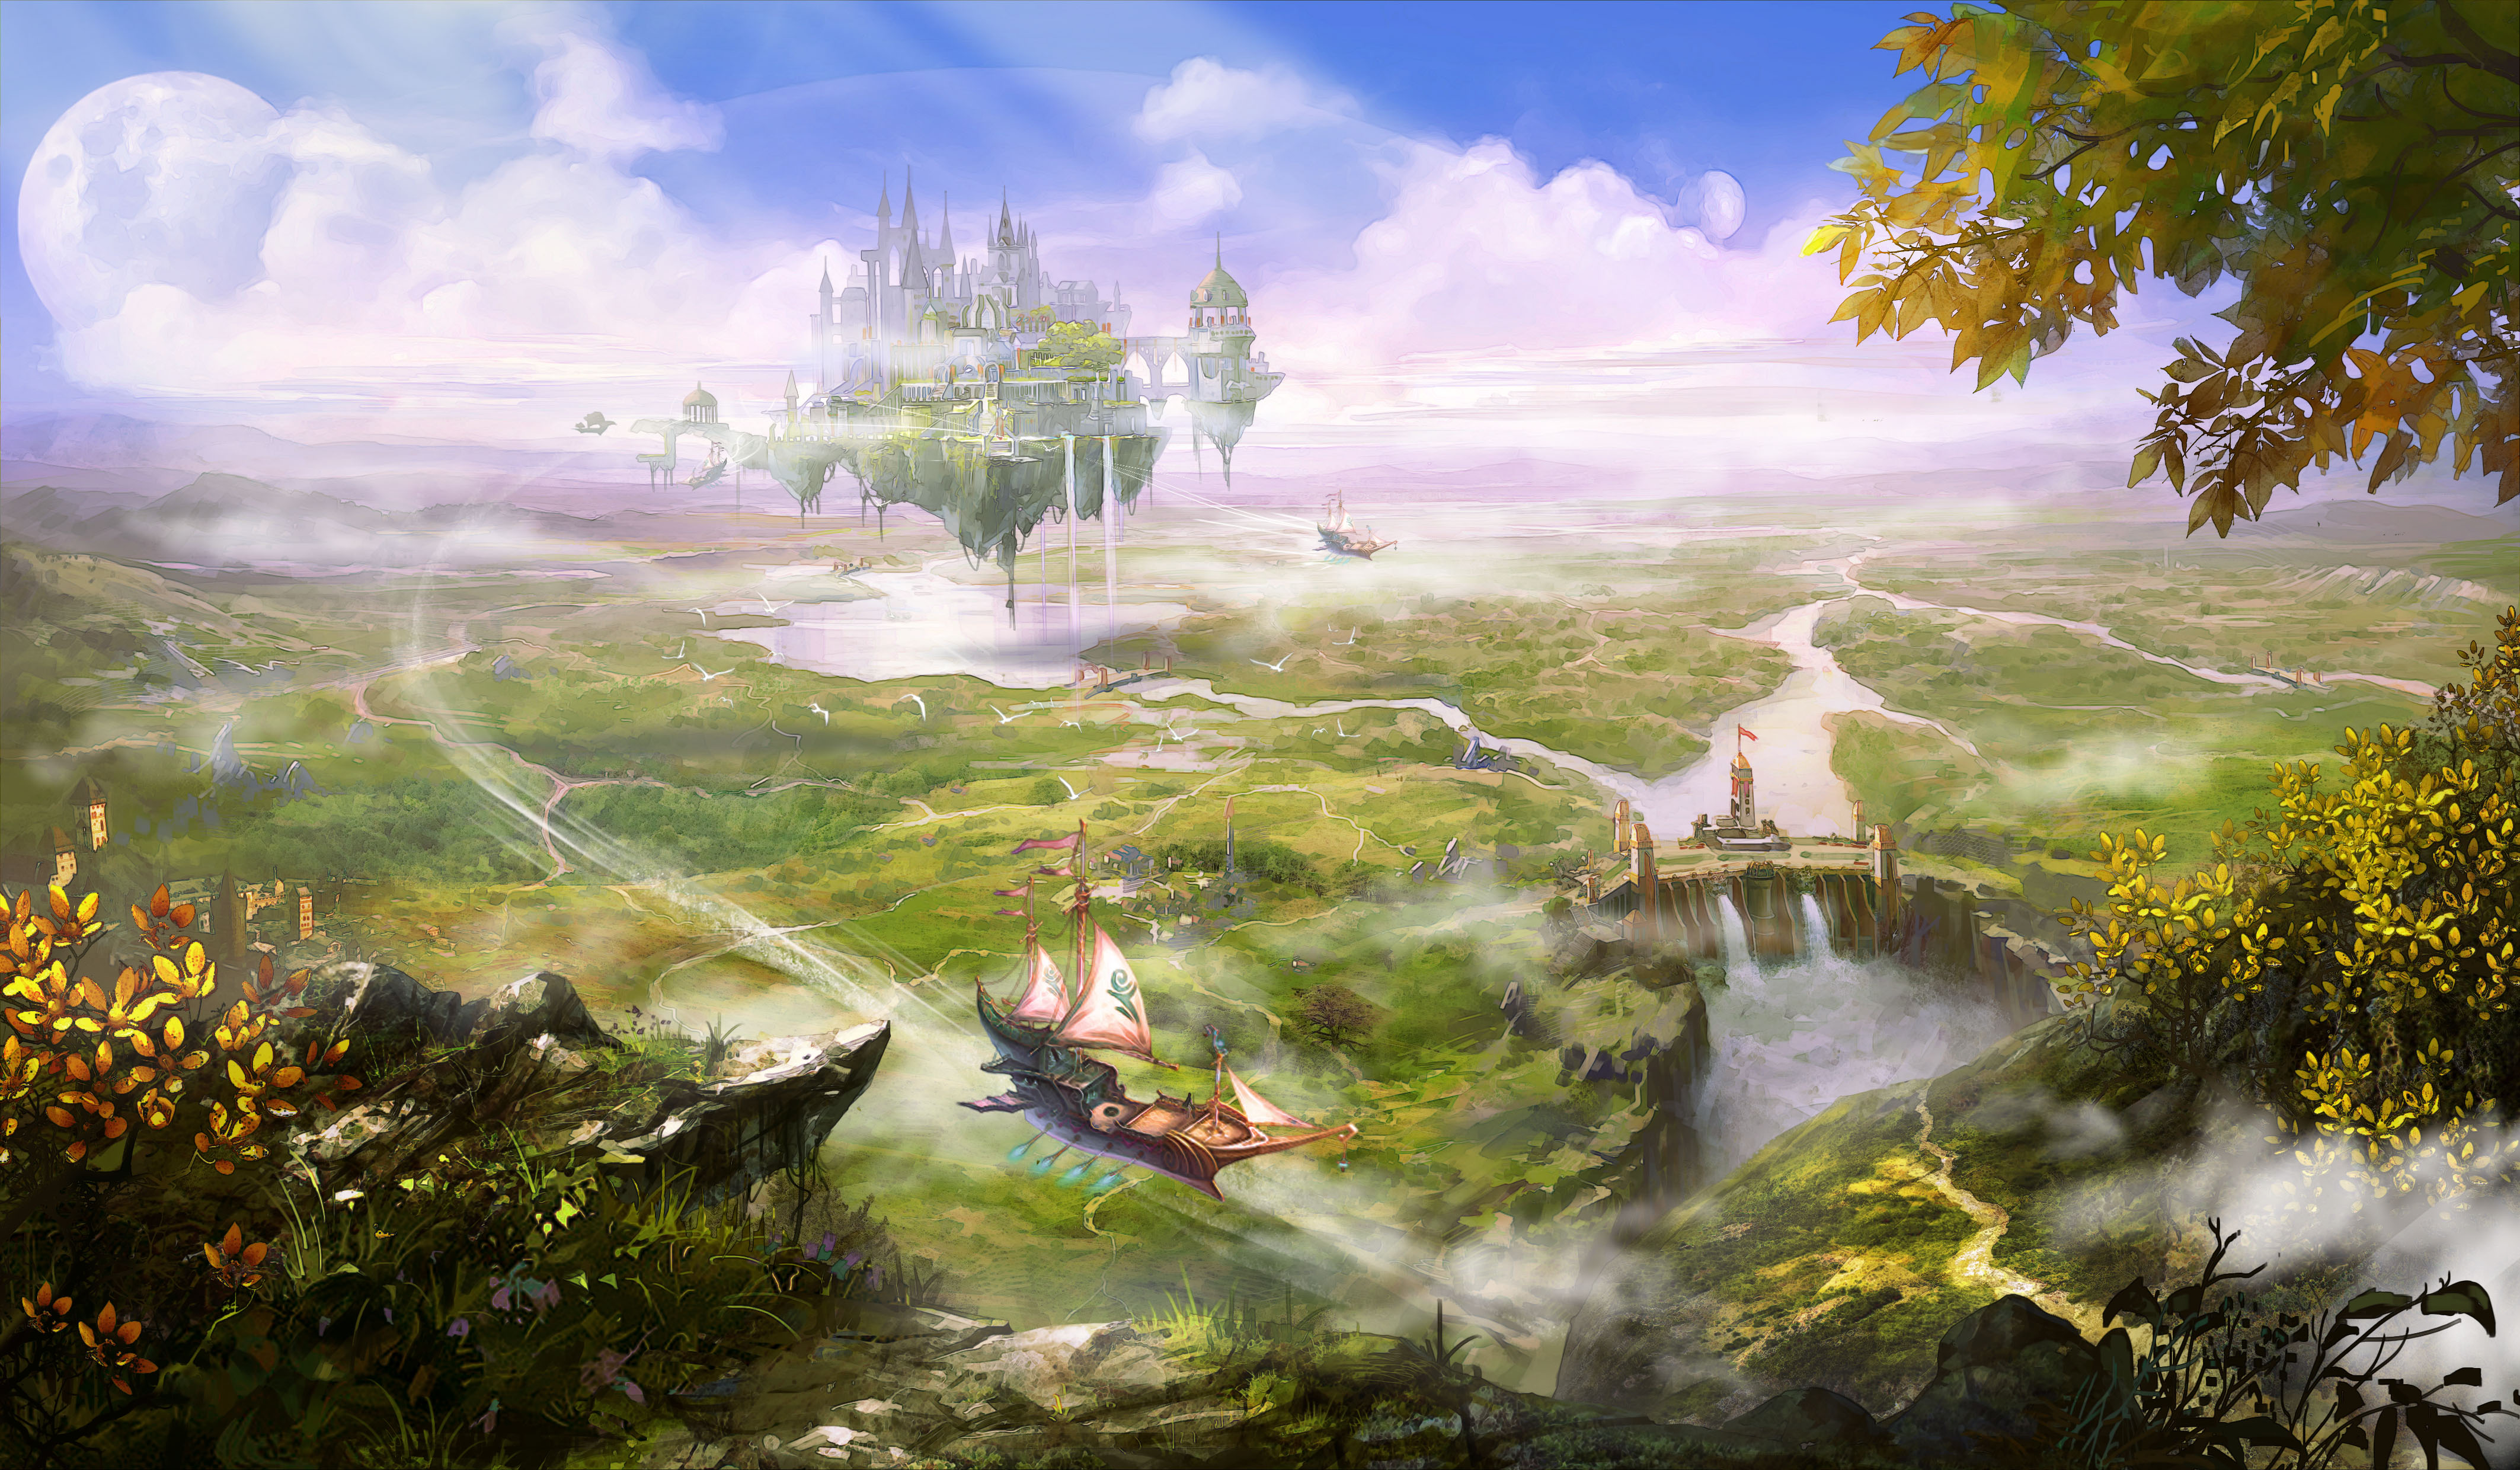 4K Fantasy Landscape Wallpaper and Background Image